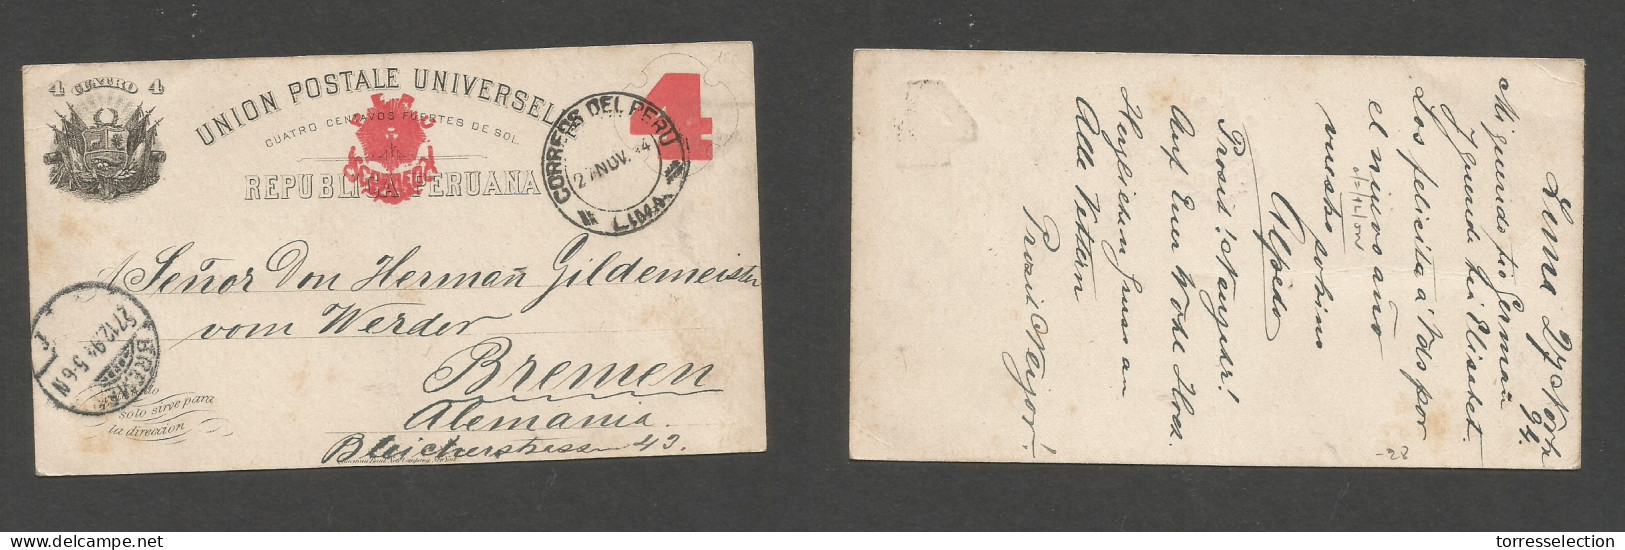 PERU. 1894 (27 Nov) Lima - Germany, Bremen (27 Dic) 4c Red / Black Stat Card, Tied Cds. Fine. - Peru